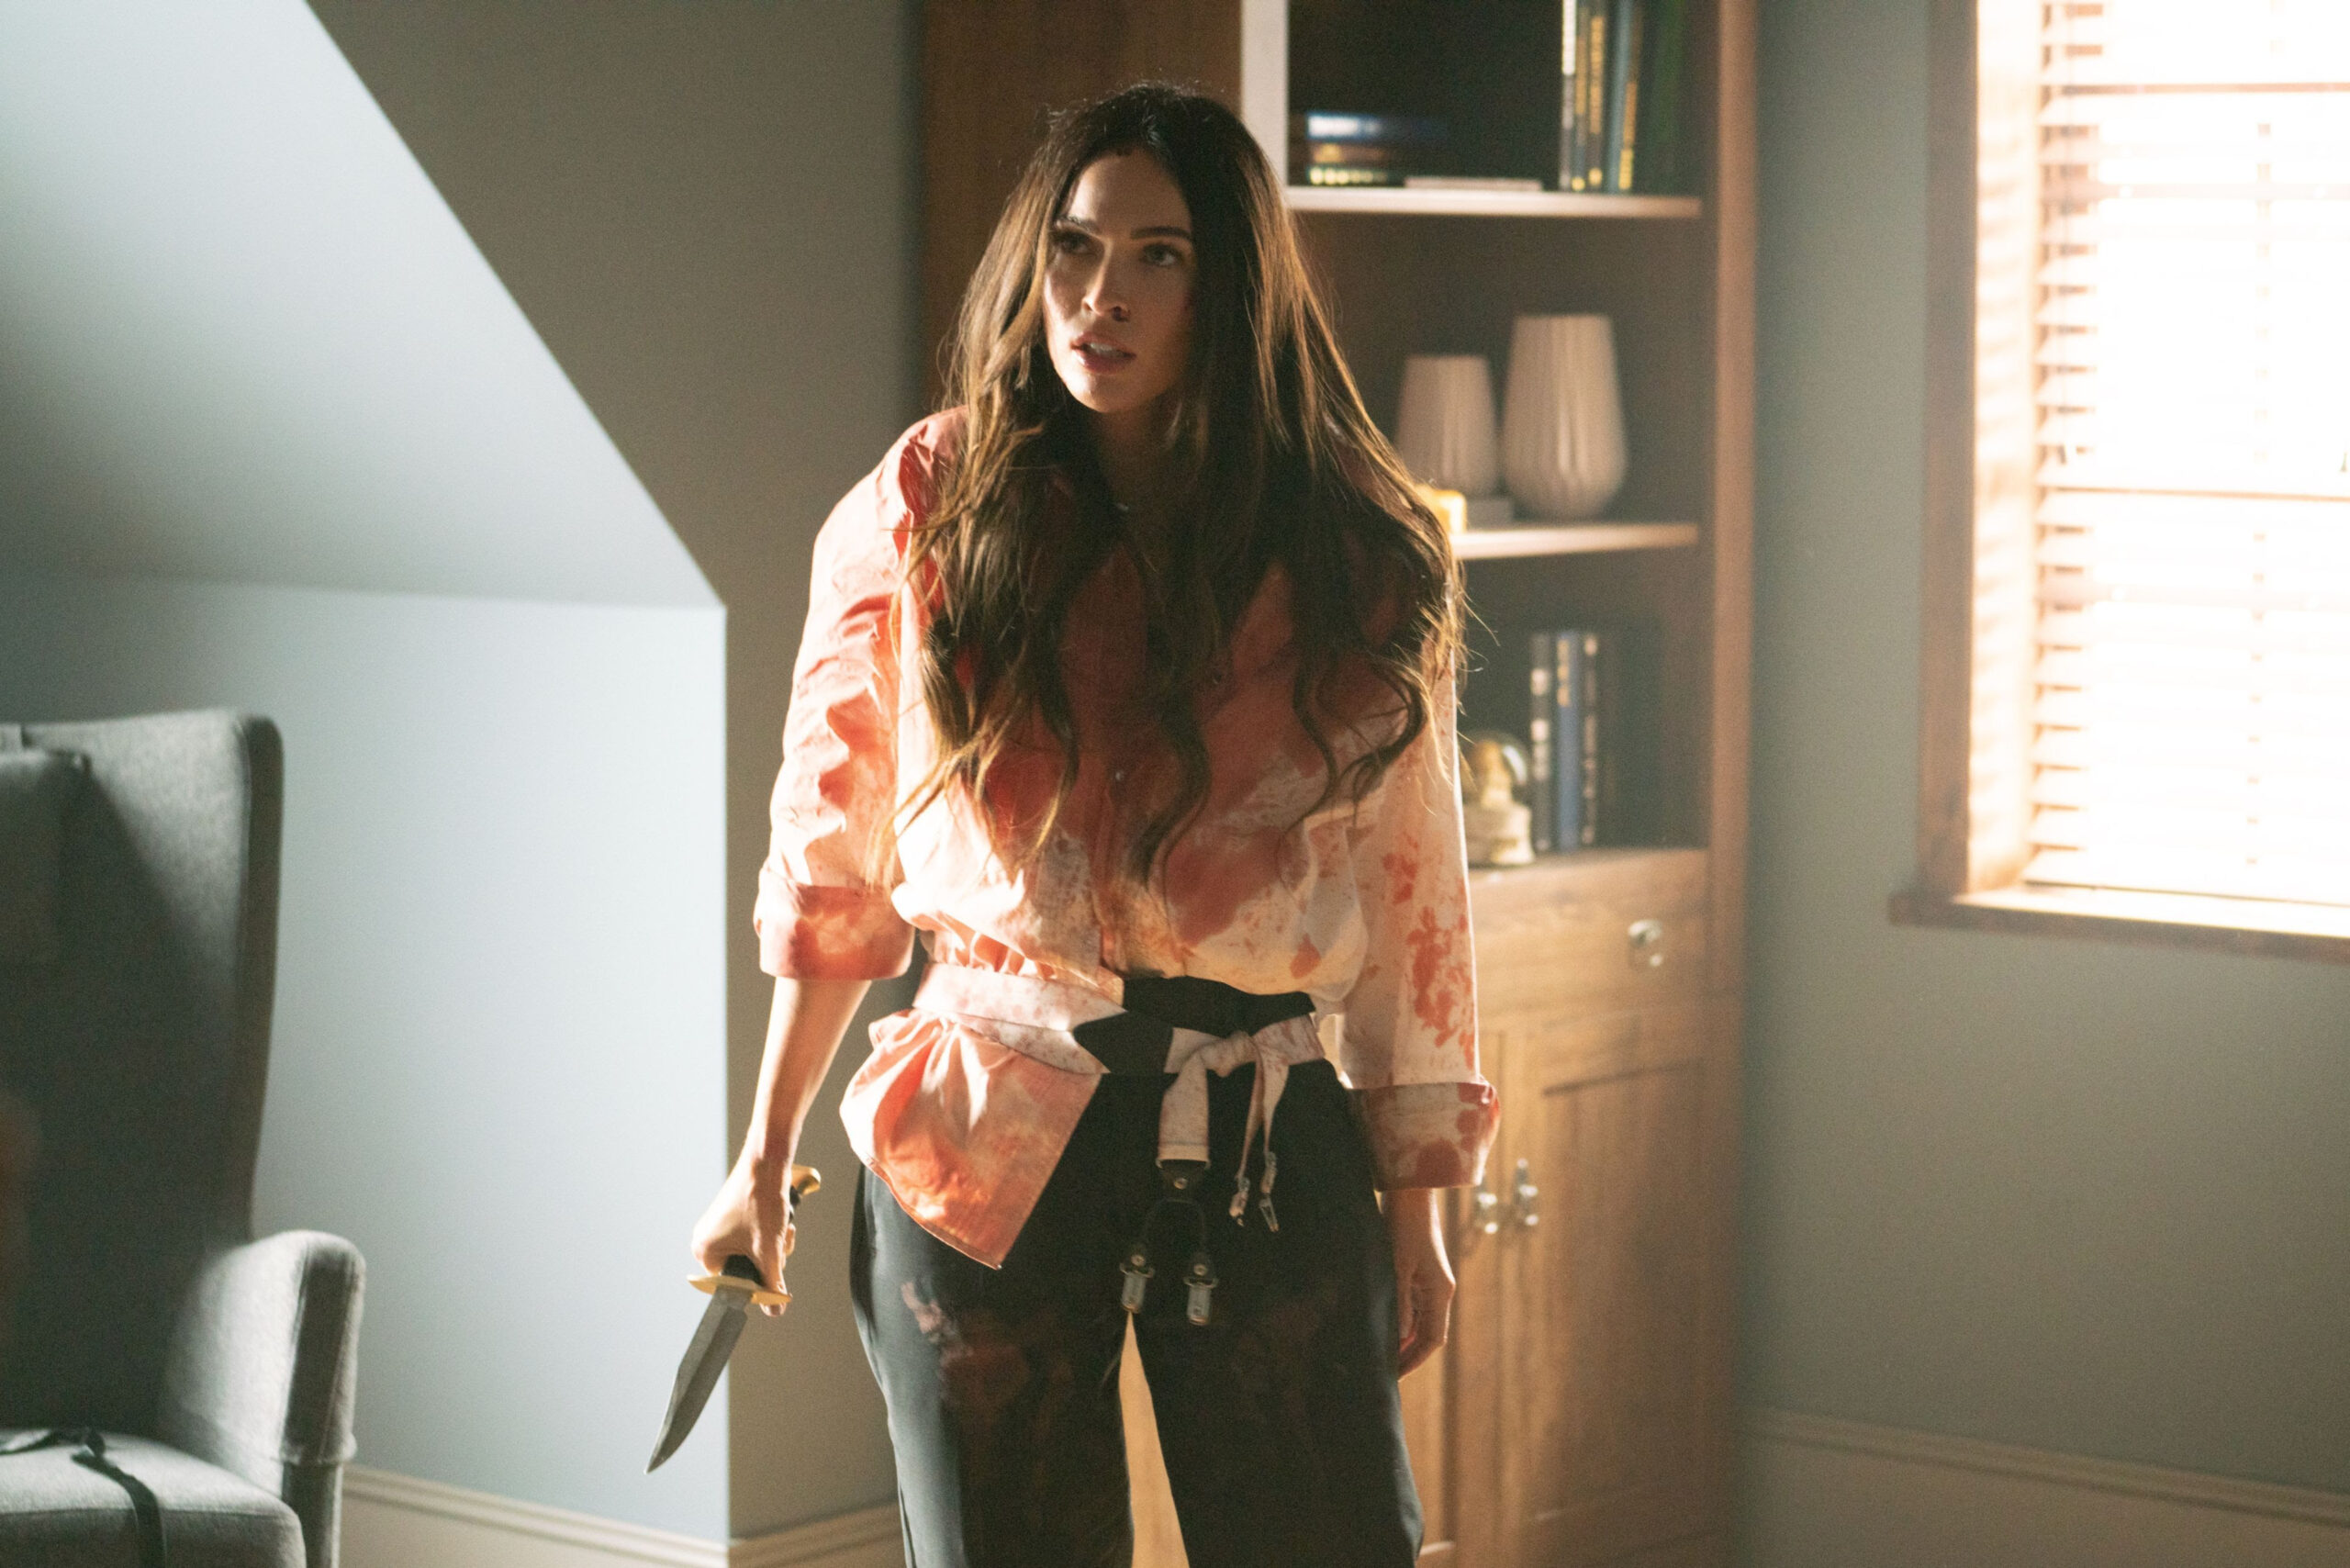 [News] TILL DEATH, Starring Megan Fox, Gets Trailer